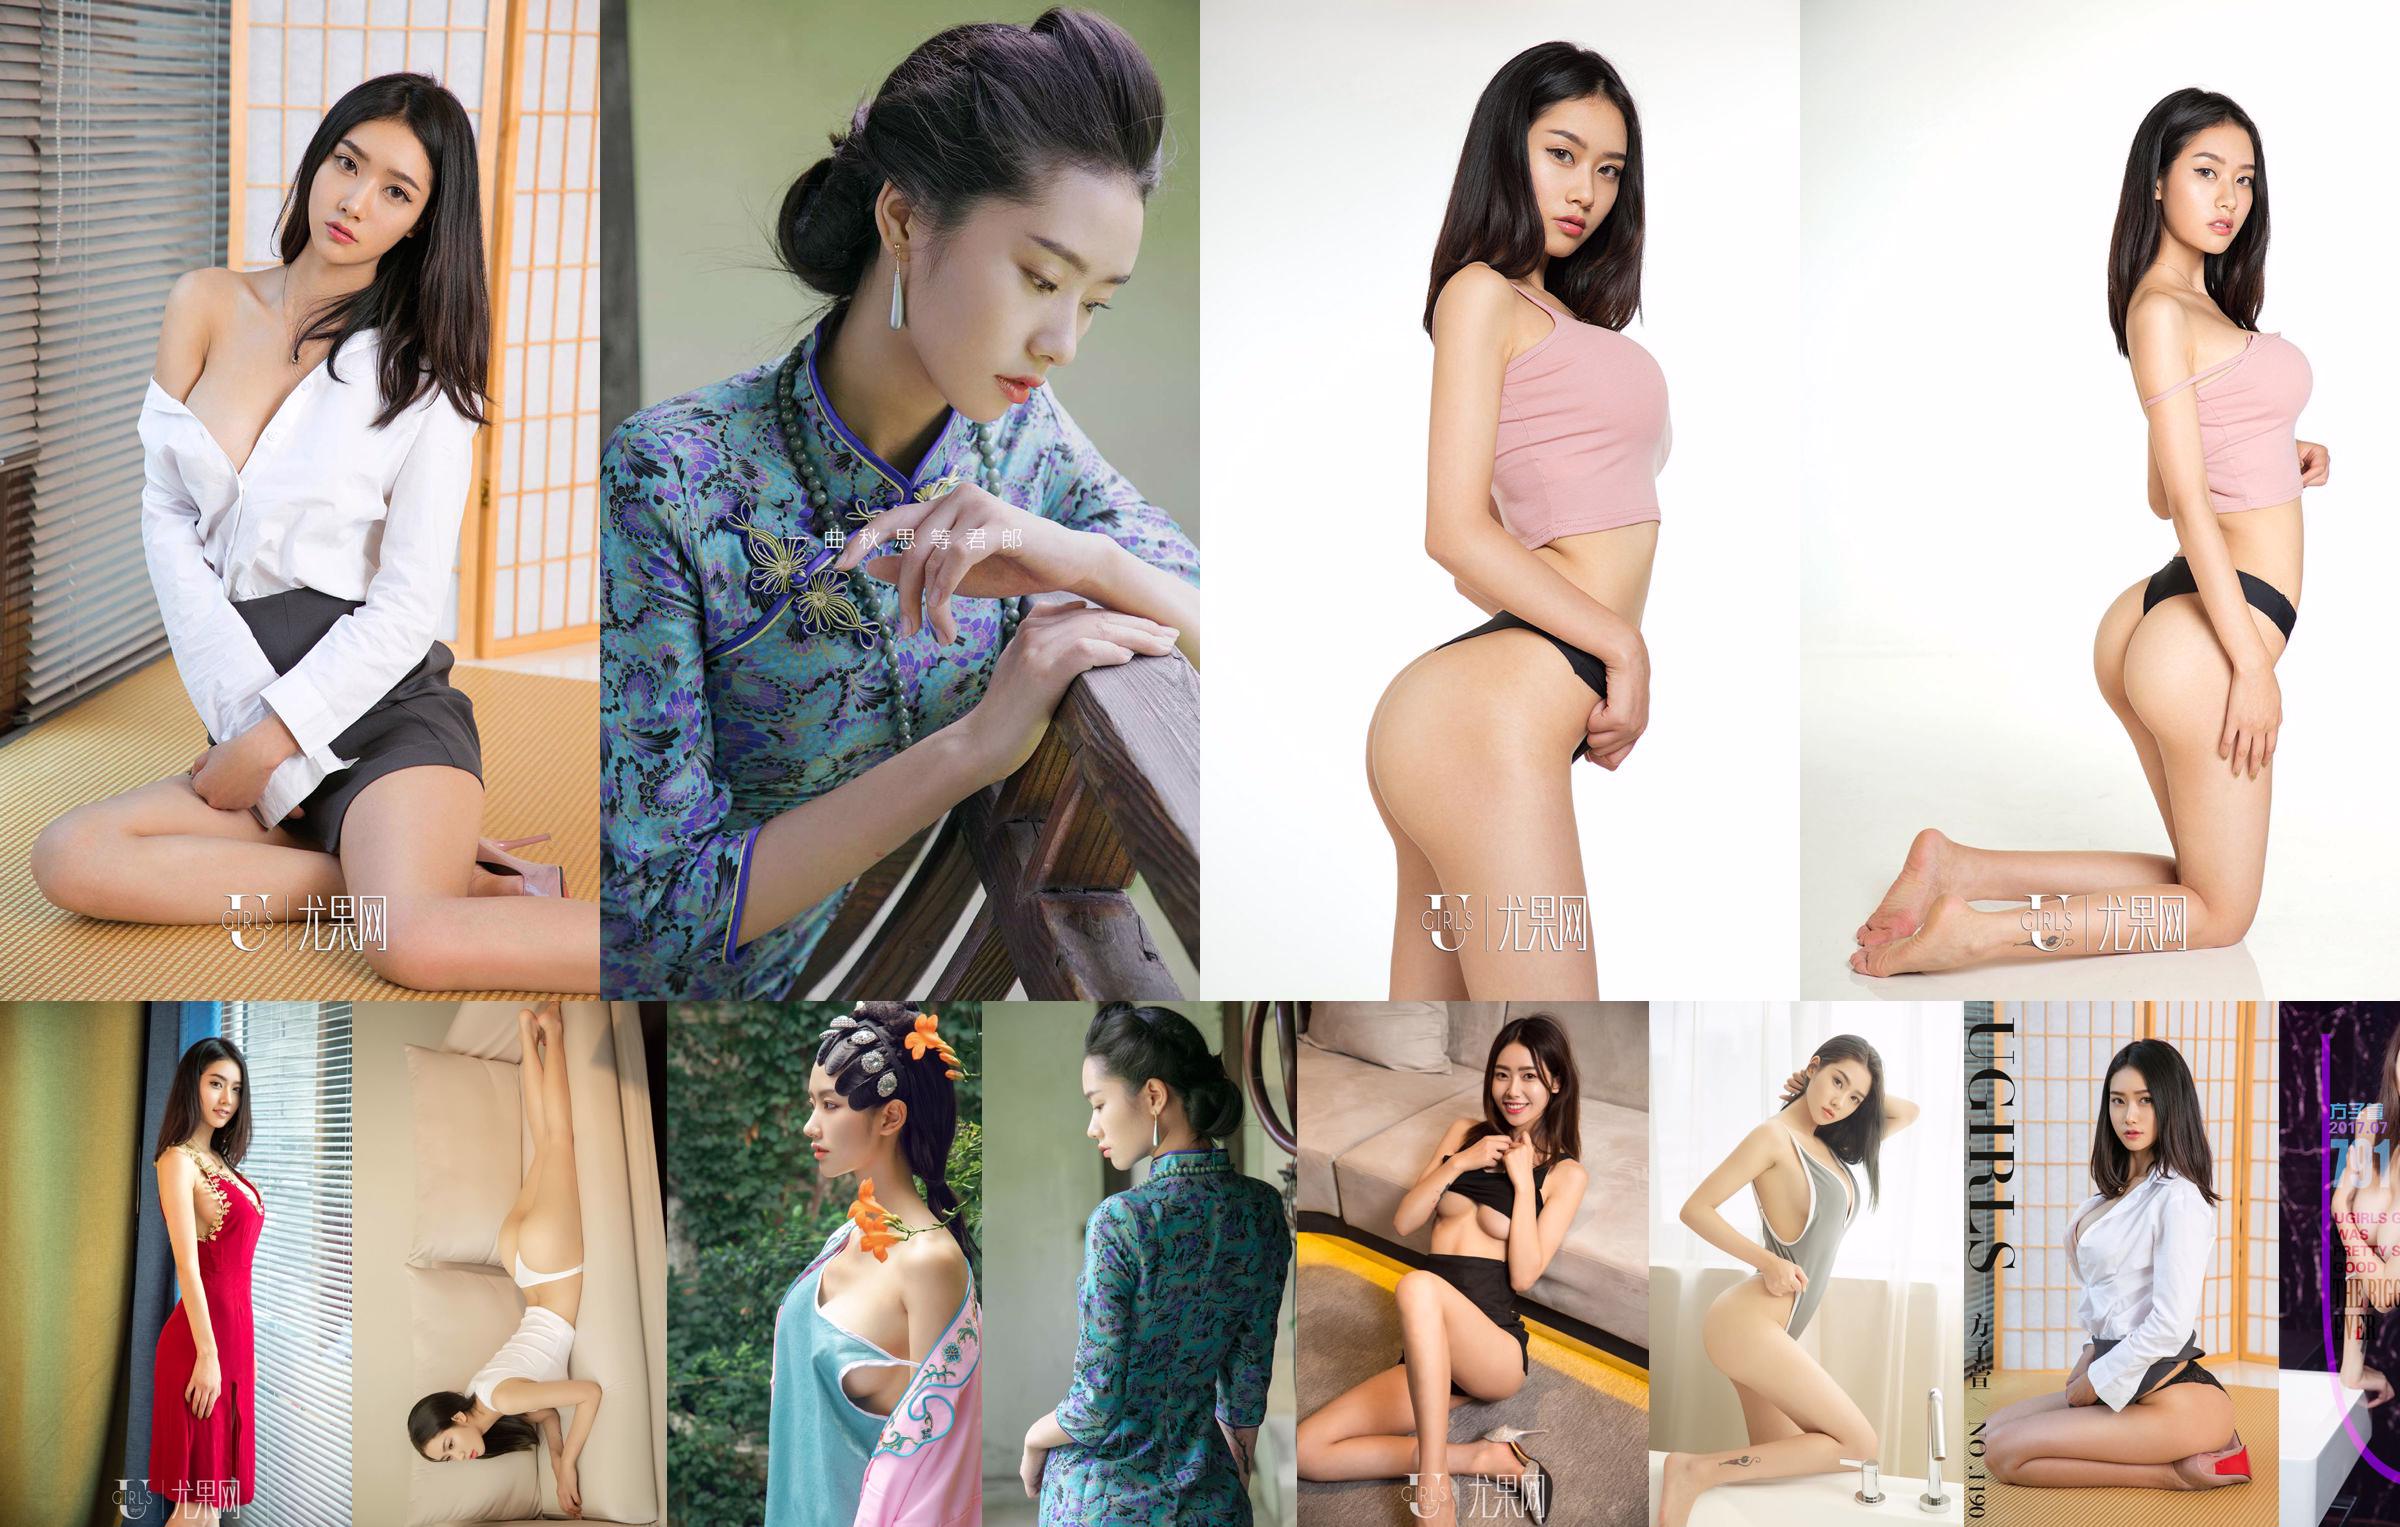 [爱蜜社IMiss] Vol.472 Fang Zixuan "Sexy Suit OL Stockings and Beautiful Legs" No.1bd930 Page 1